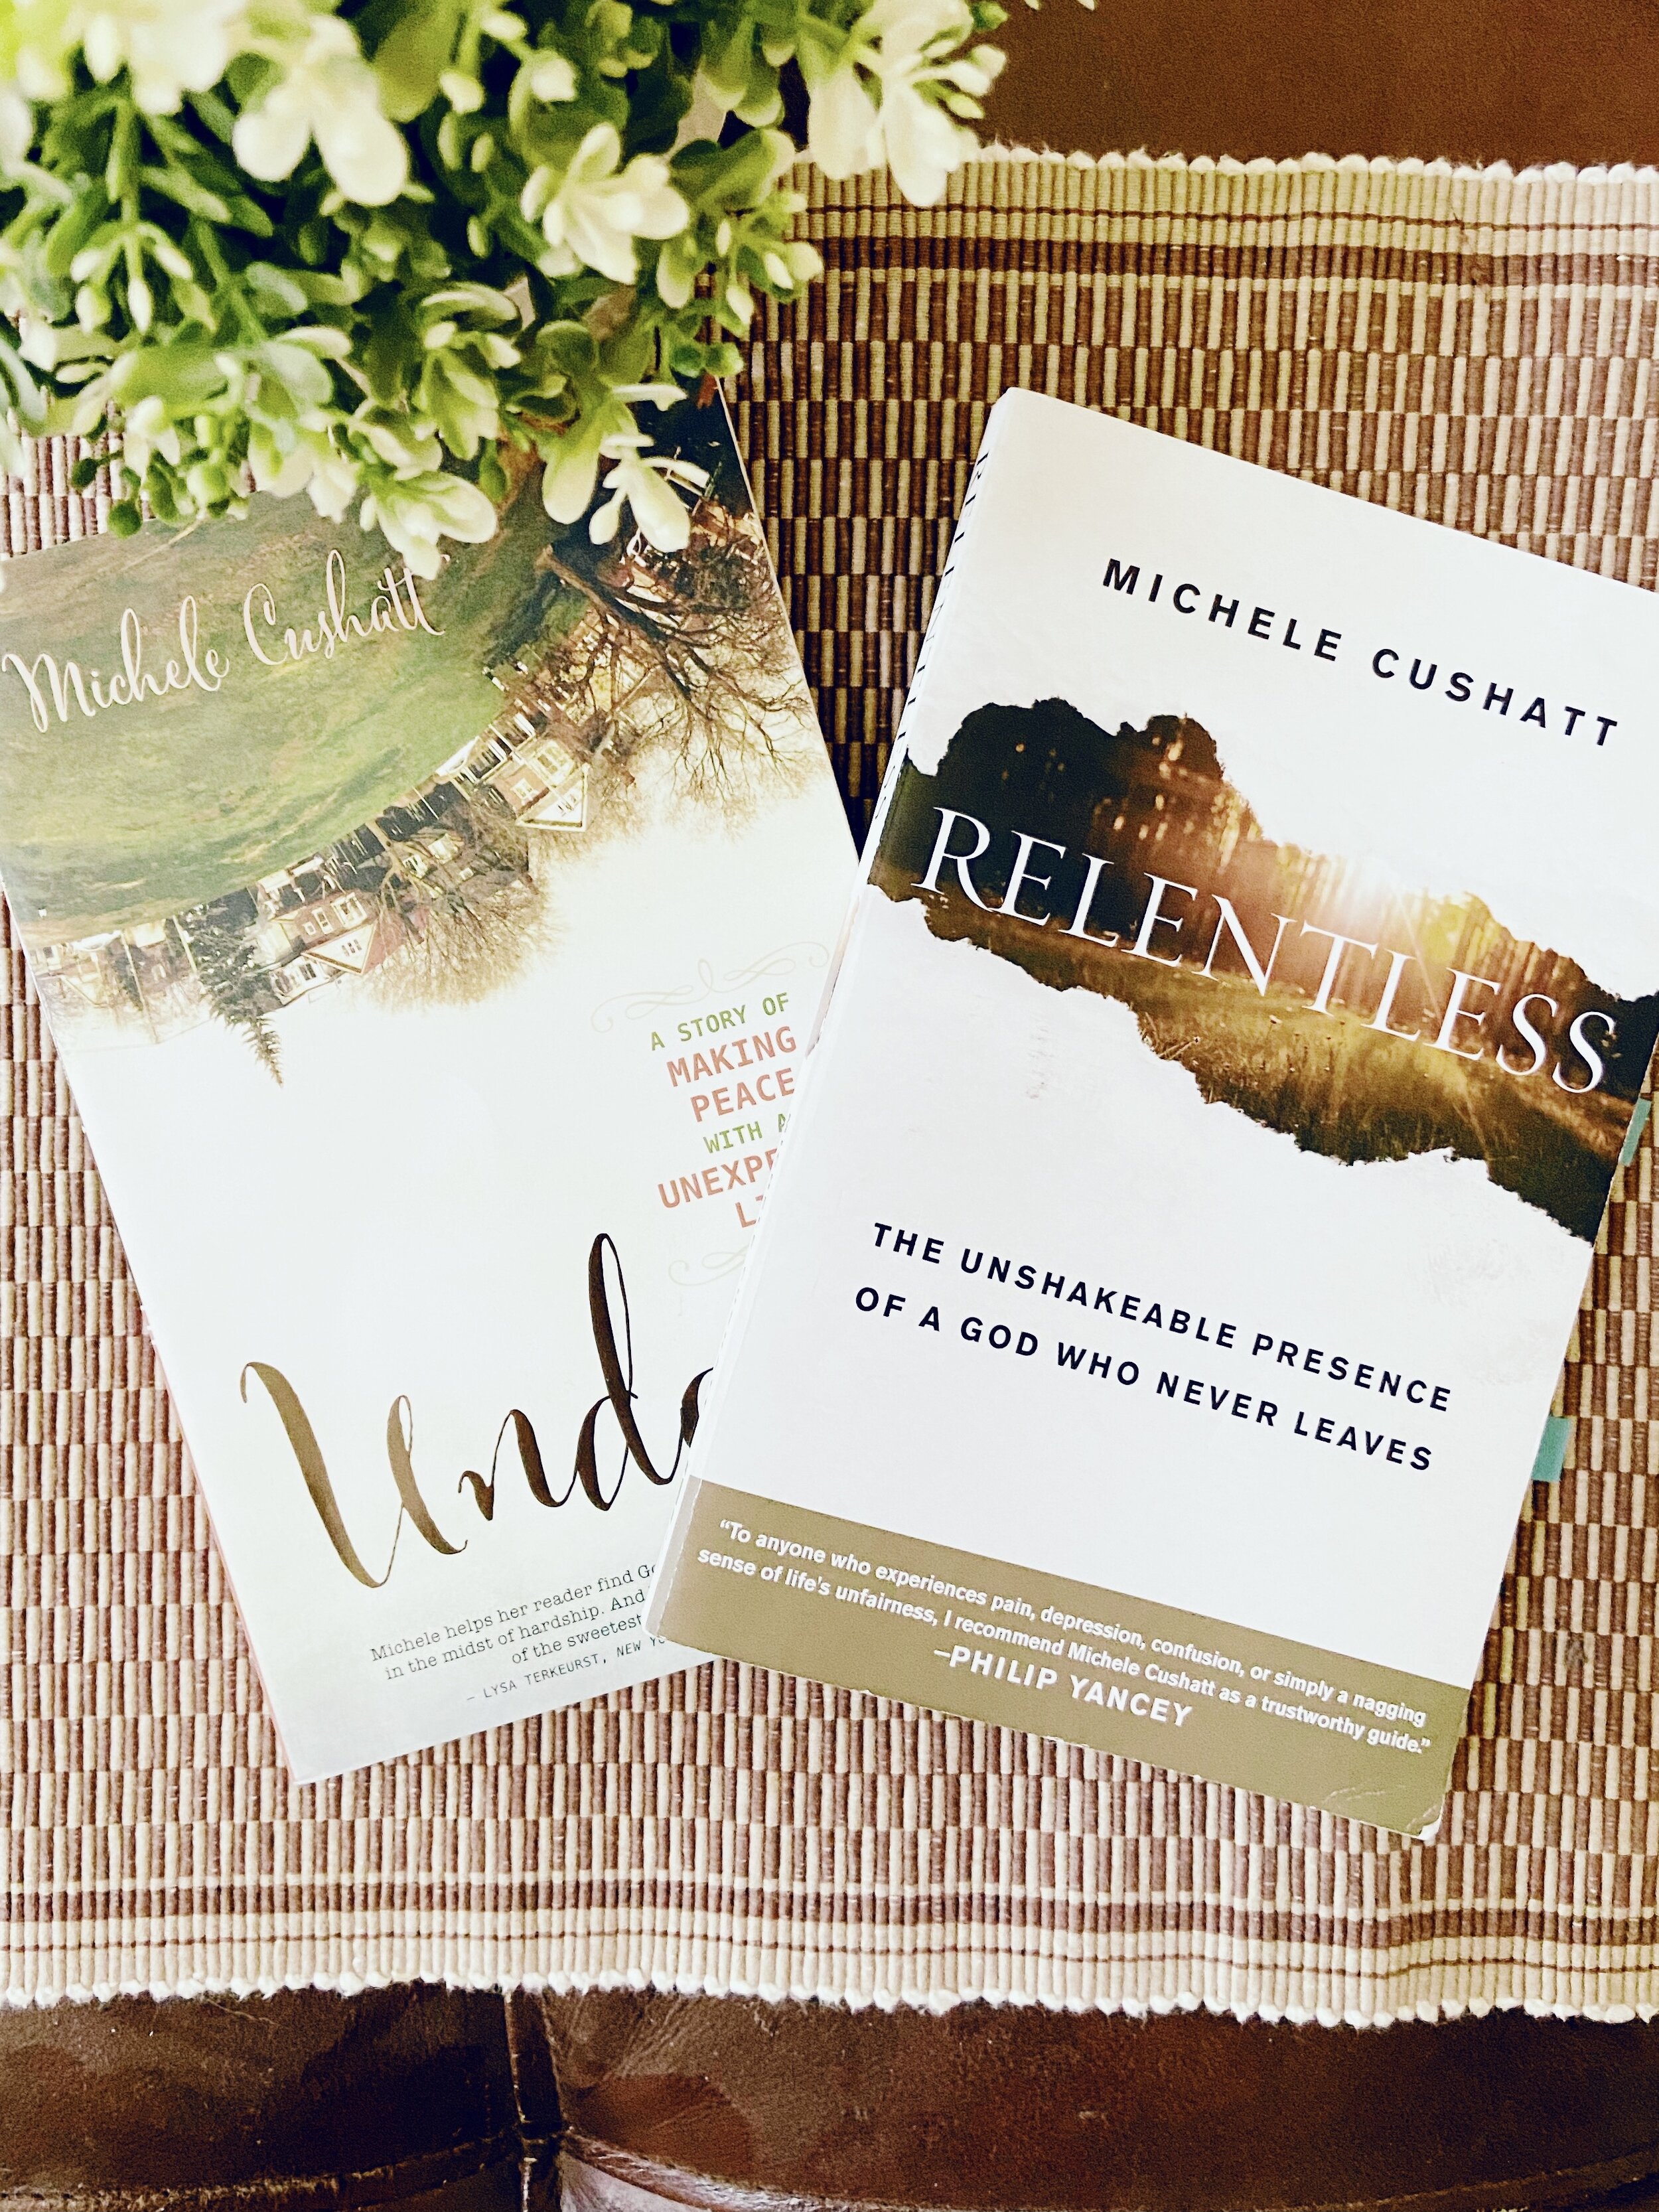 Book Reviews: Undone (a Memoir) and Relentless by Michele Cushatt